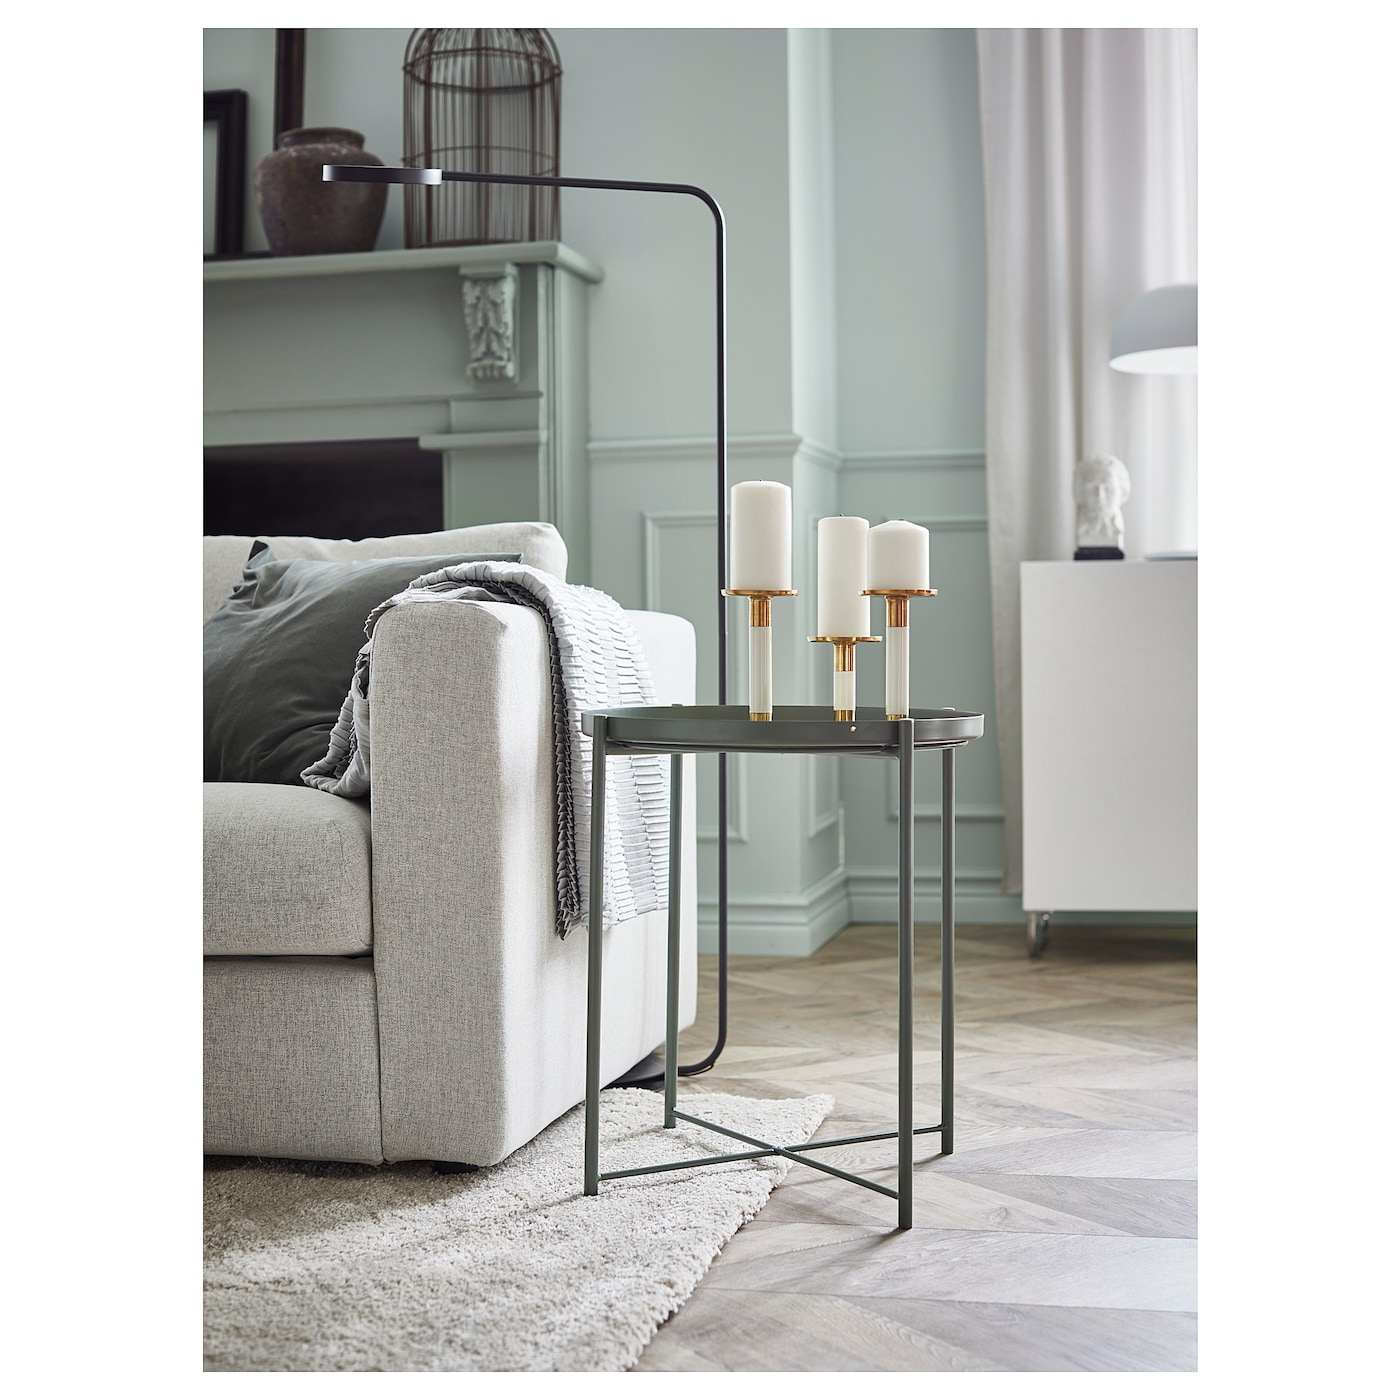 Gladom Table/plateau - Vert Foncé 45X53 Cm destiné Mobilier De Jardin Ikea